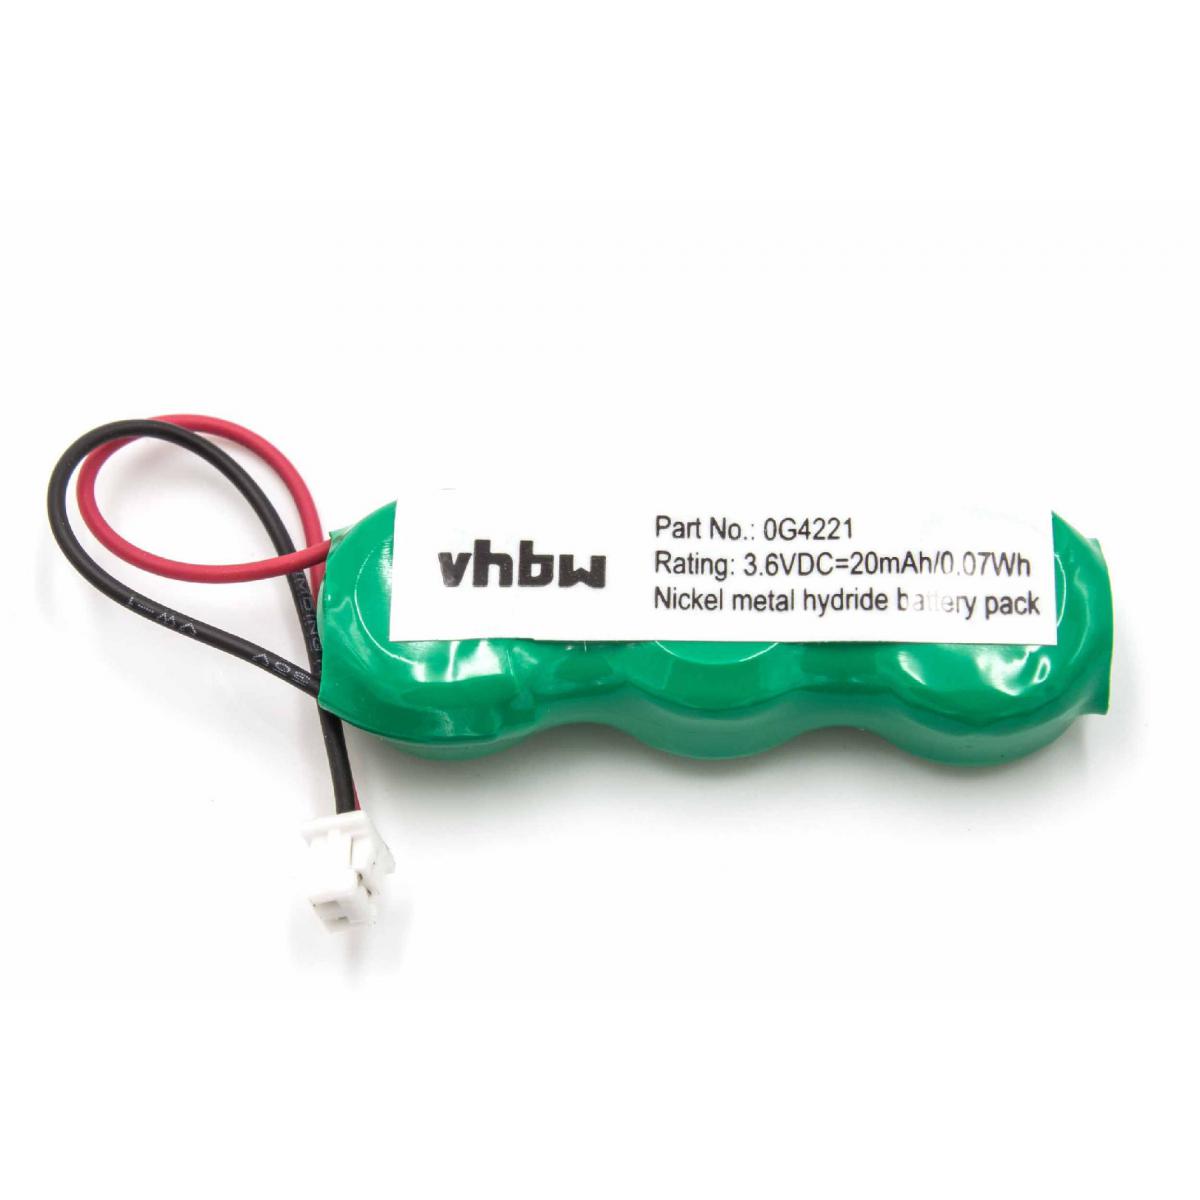 Vhbw - Batterie BIOS Ni-MH vhbw 20mAh (7.2V)pour oridnateur Notebook Symbol MC3000R-LC38S00G-E, MC3000R-LC38S00GER, MC3000R-LC48S00G-E.Remplace: MC30, MC3000 - Piles spécifiques